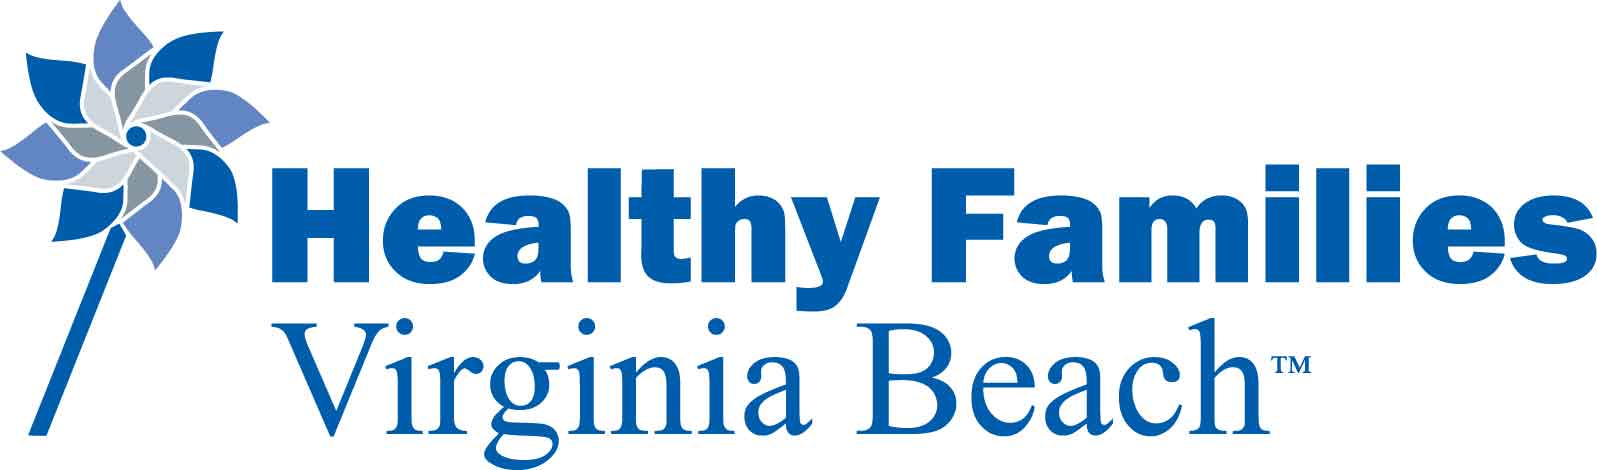 Healthy Families - Virginia Beach